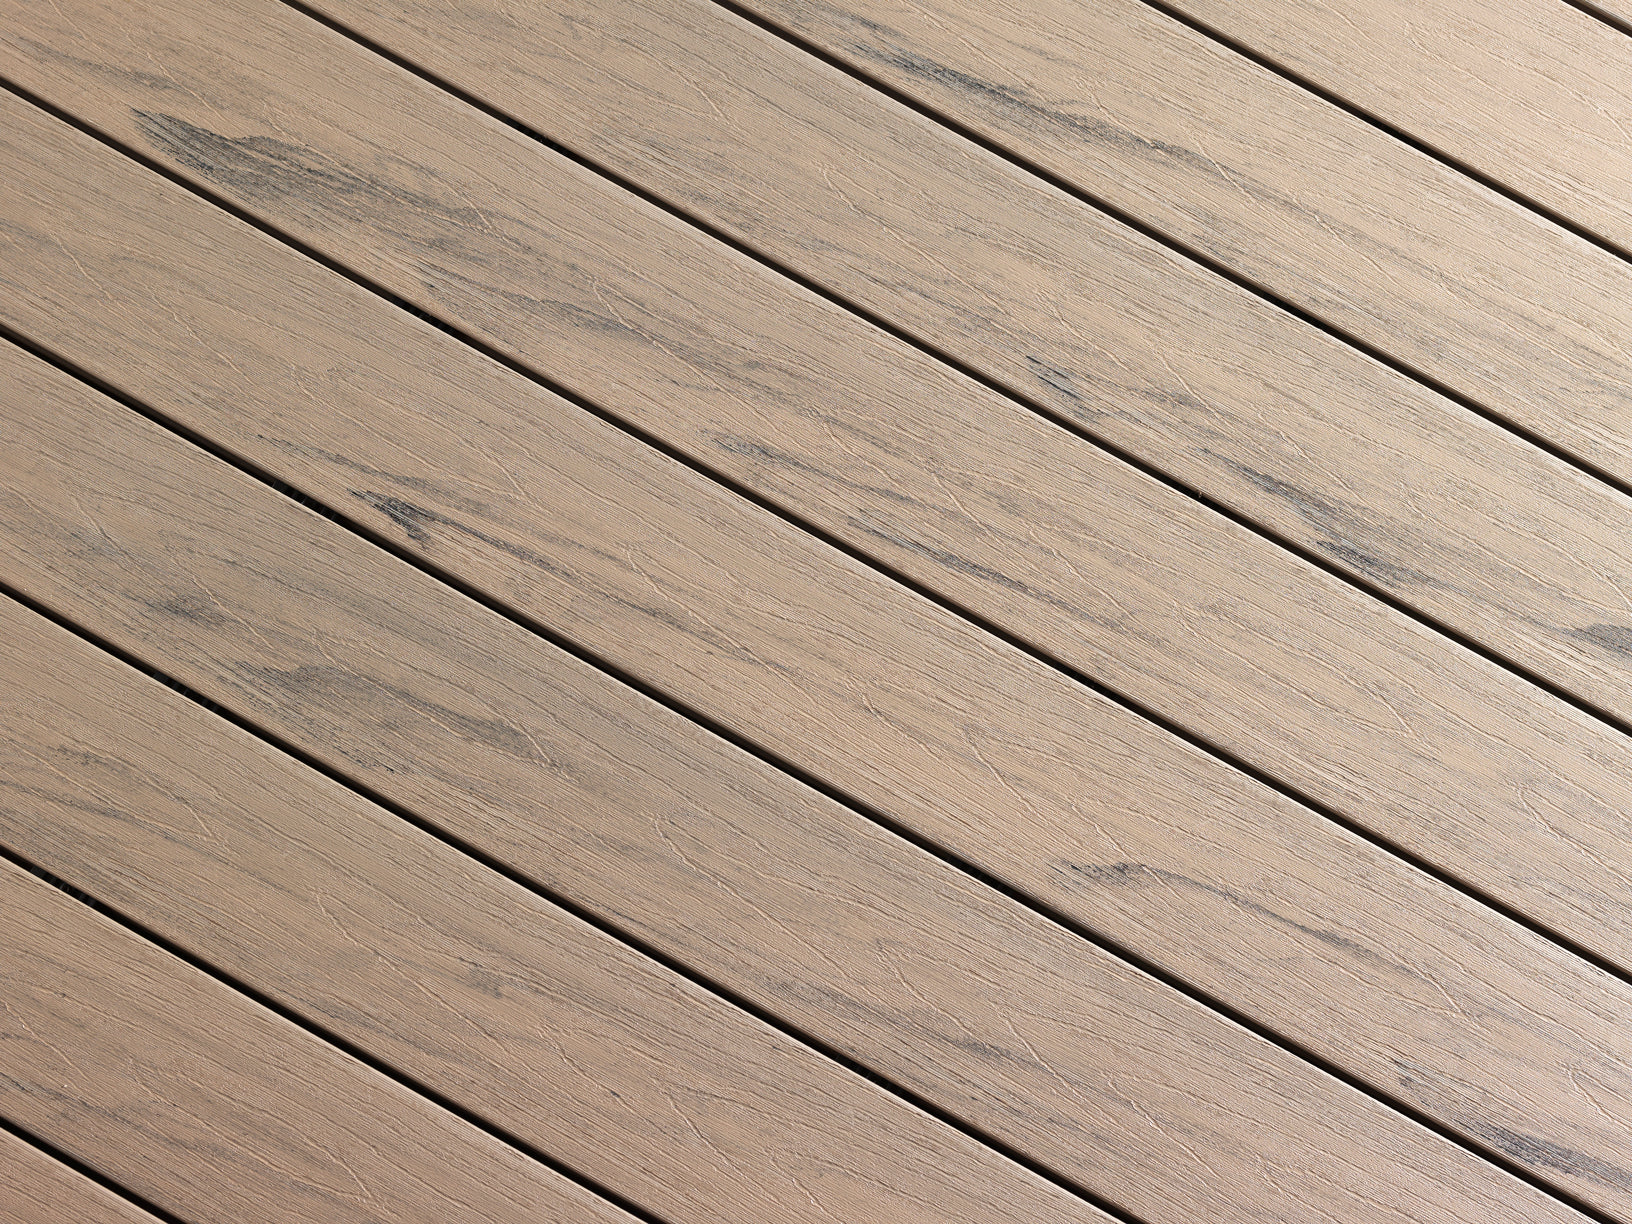 Hazel wood composite decking color